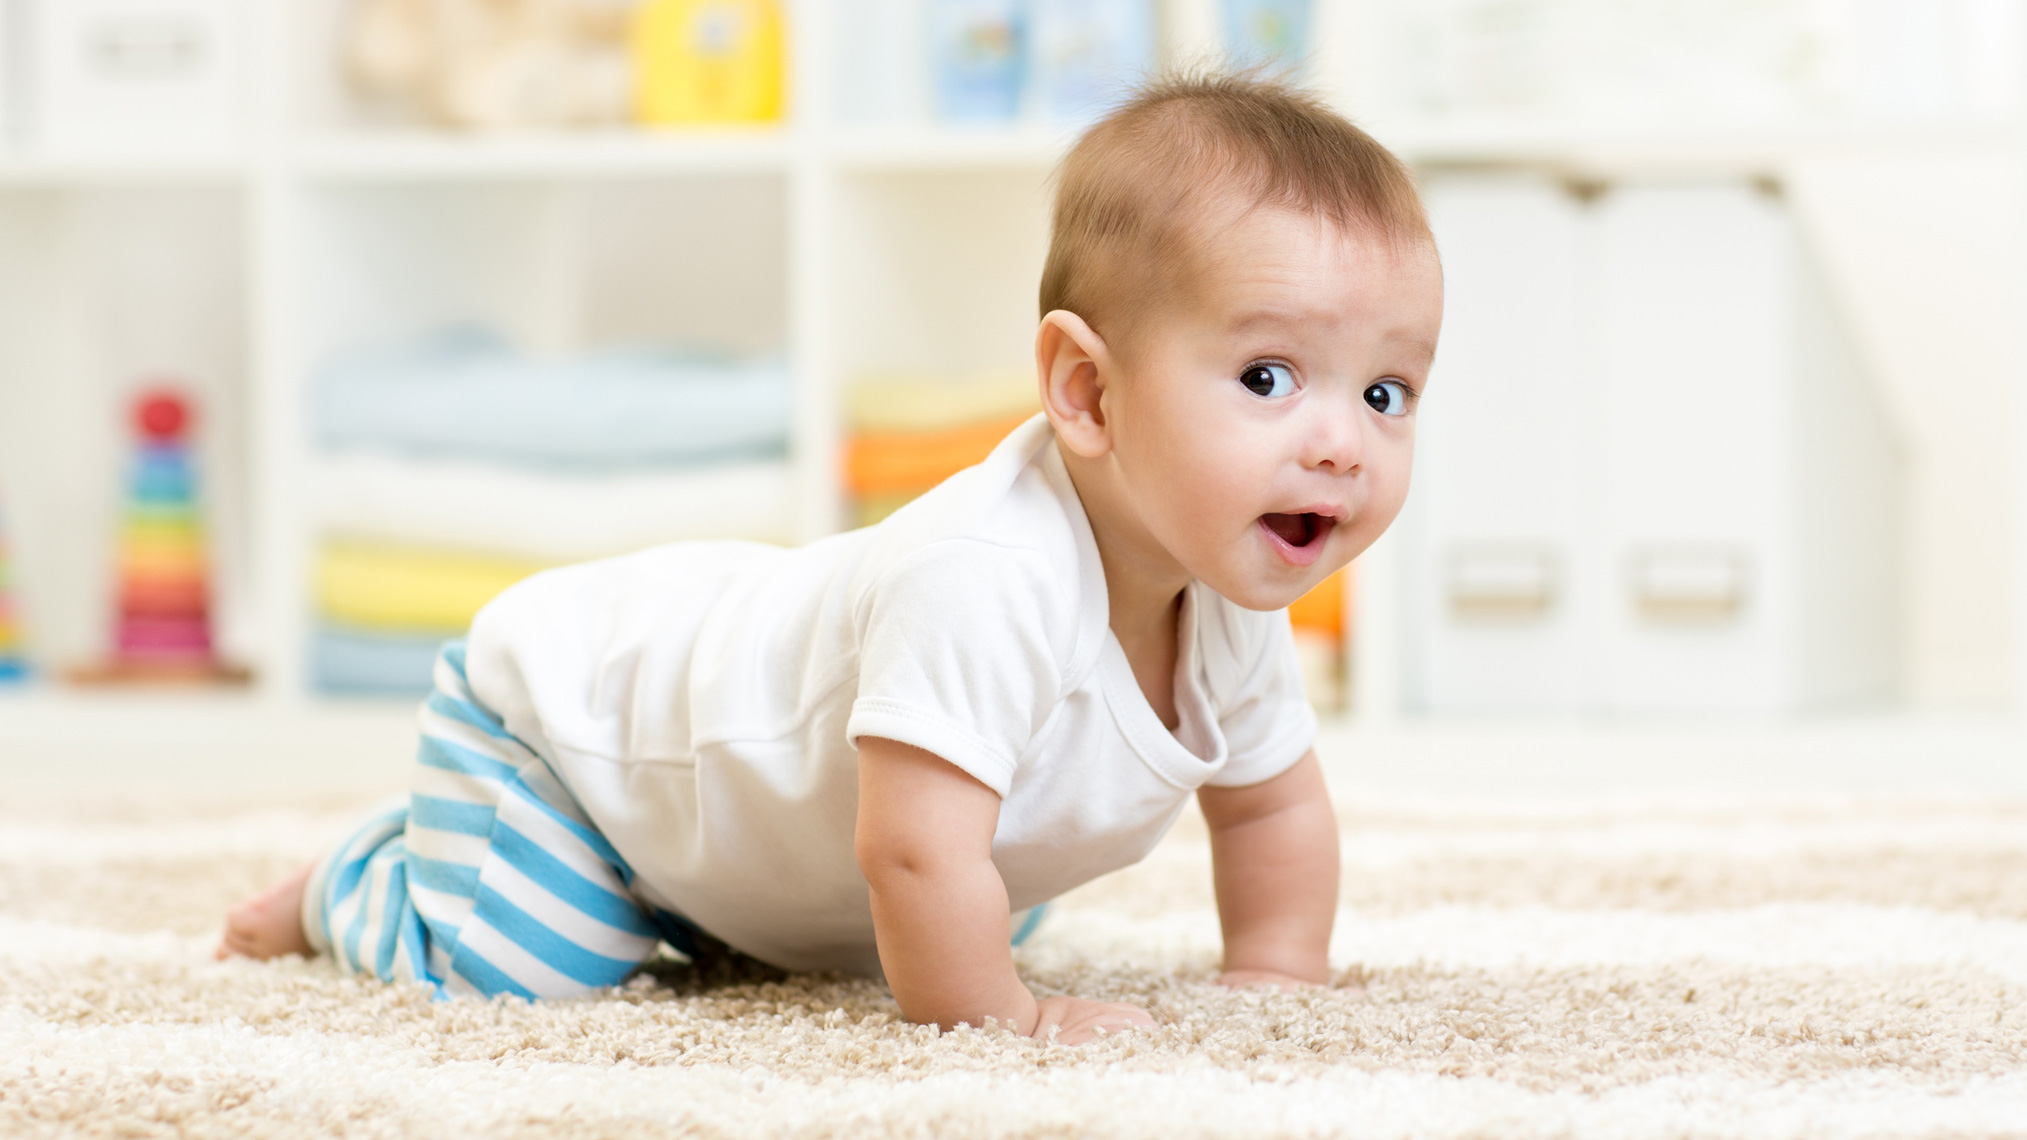 Baby krabbelt auf einem weichen Teppich